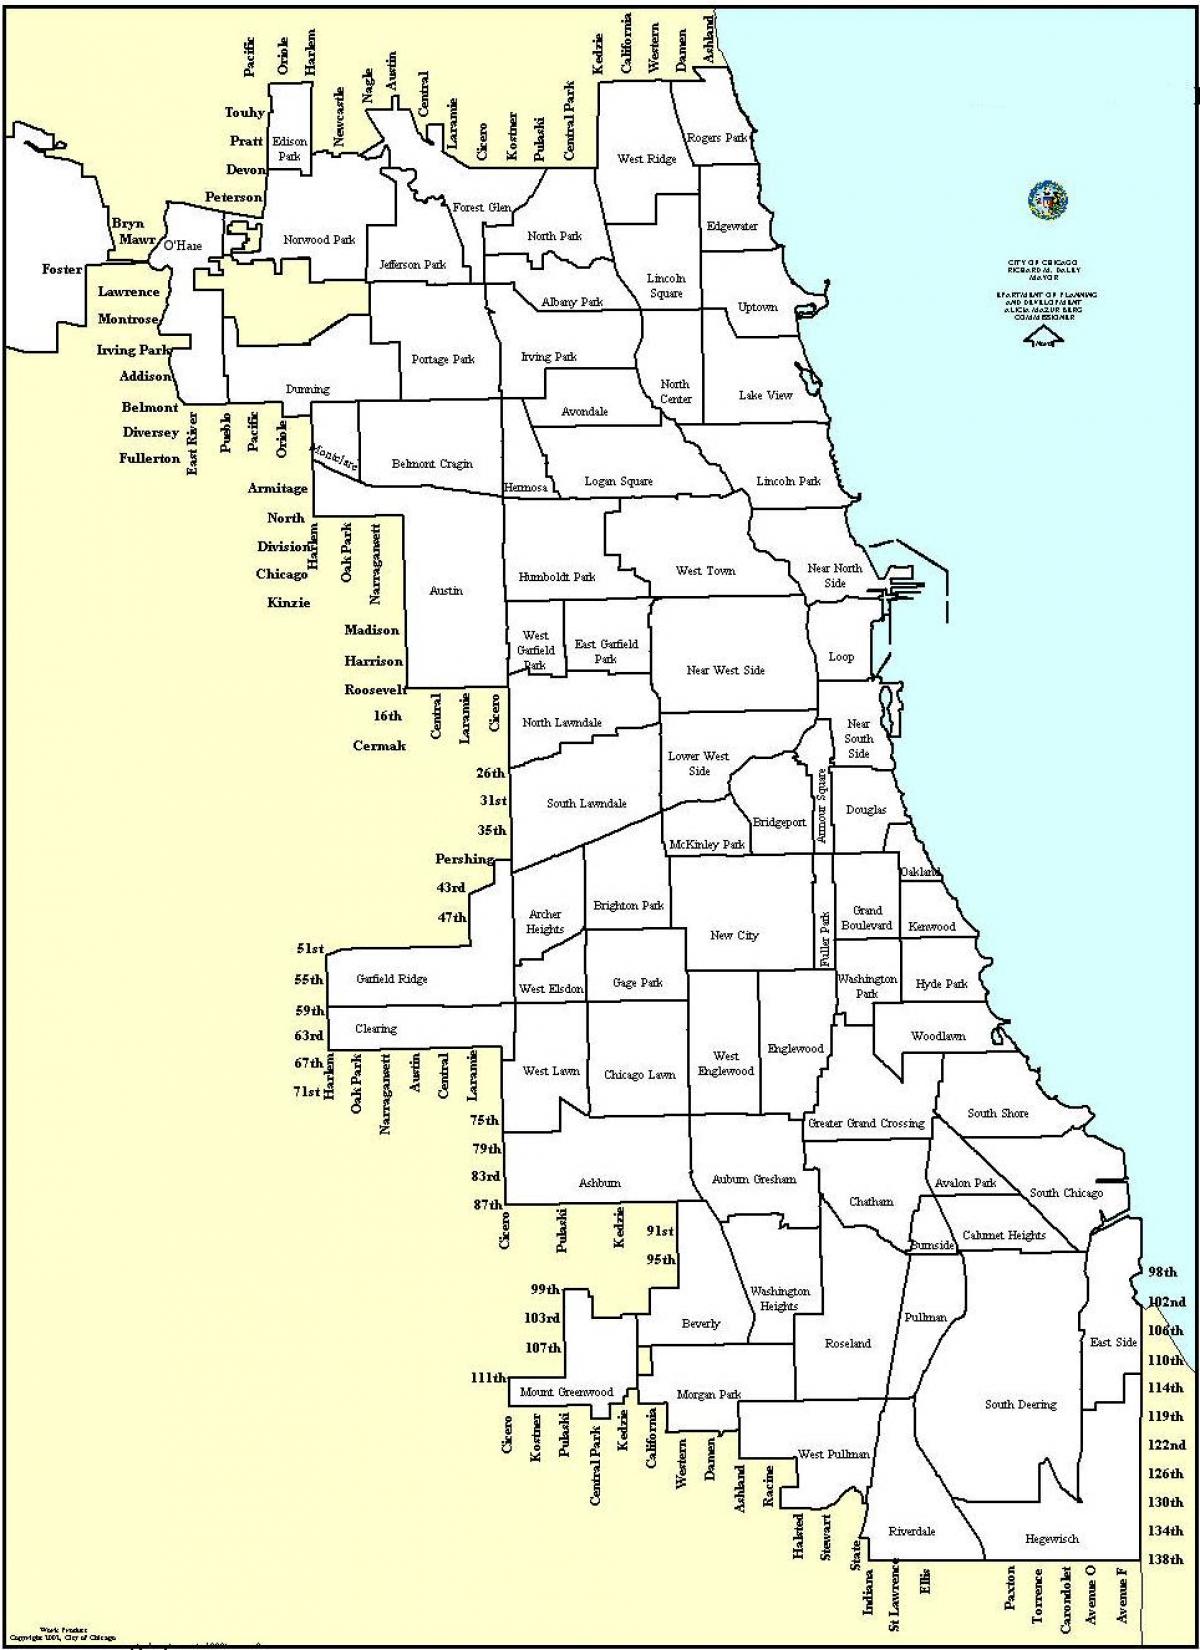 la zonificació del mapa de Chicago